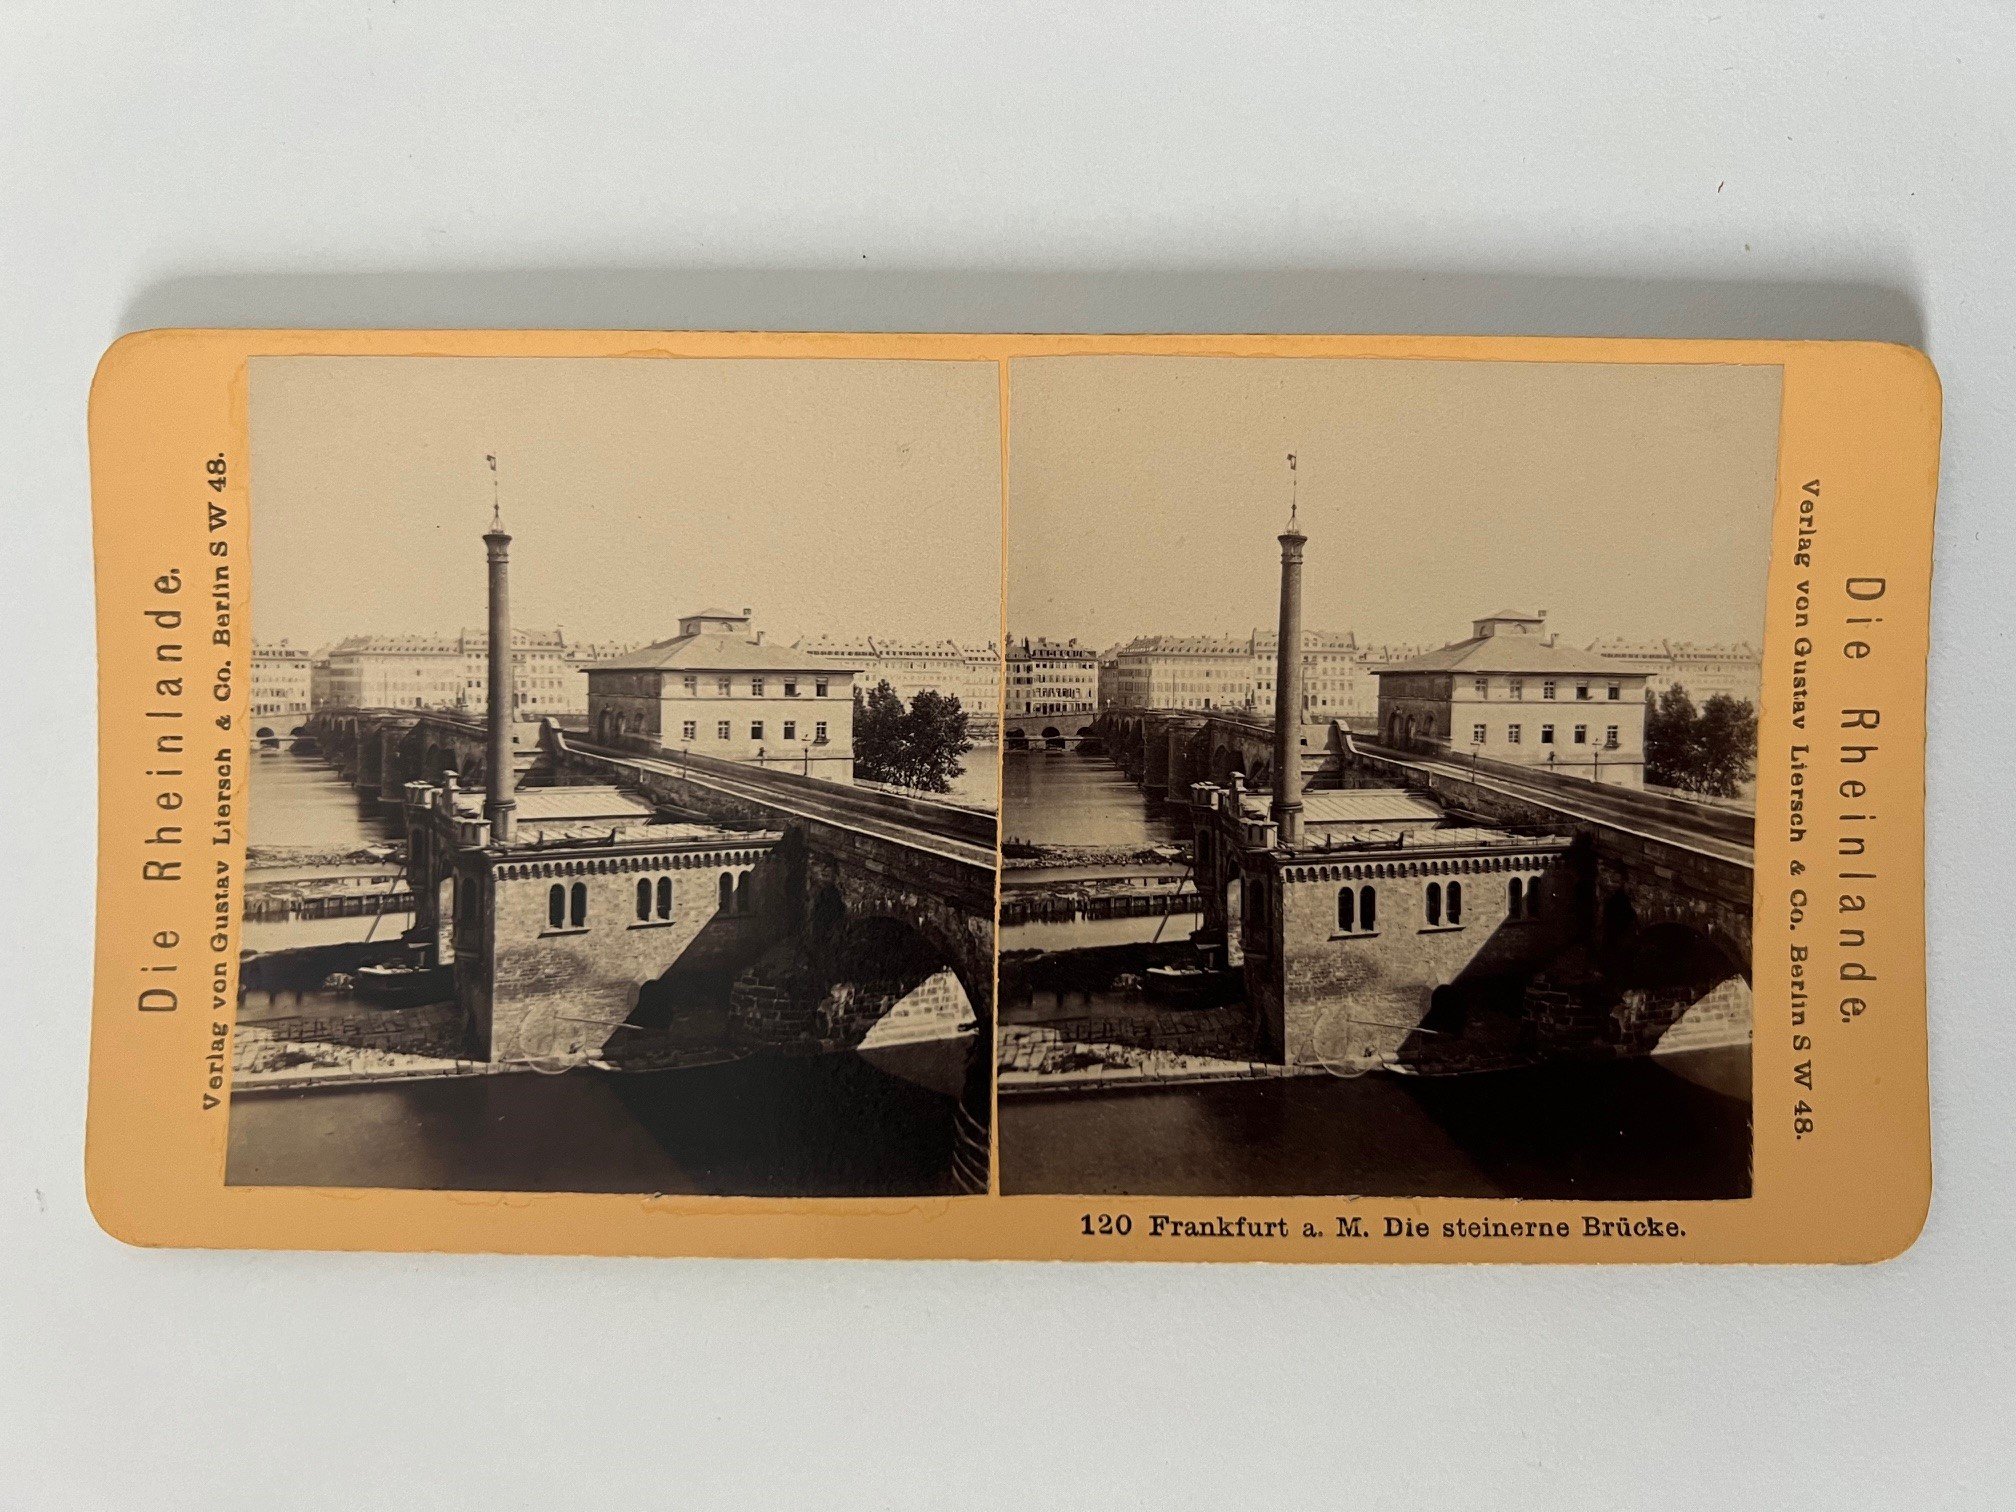 Stereobild, Verlag Gustav Liersch, Frankfurt, Nr. 120, Die steinerne Brücke, ca. 1881. (Taunus-Rhein-Main - Regionalgeschichtliche Sammlung Dr. Stefan Naas CC BY-NC-SA)